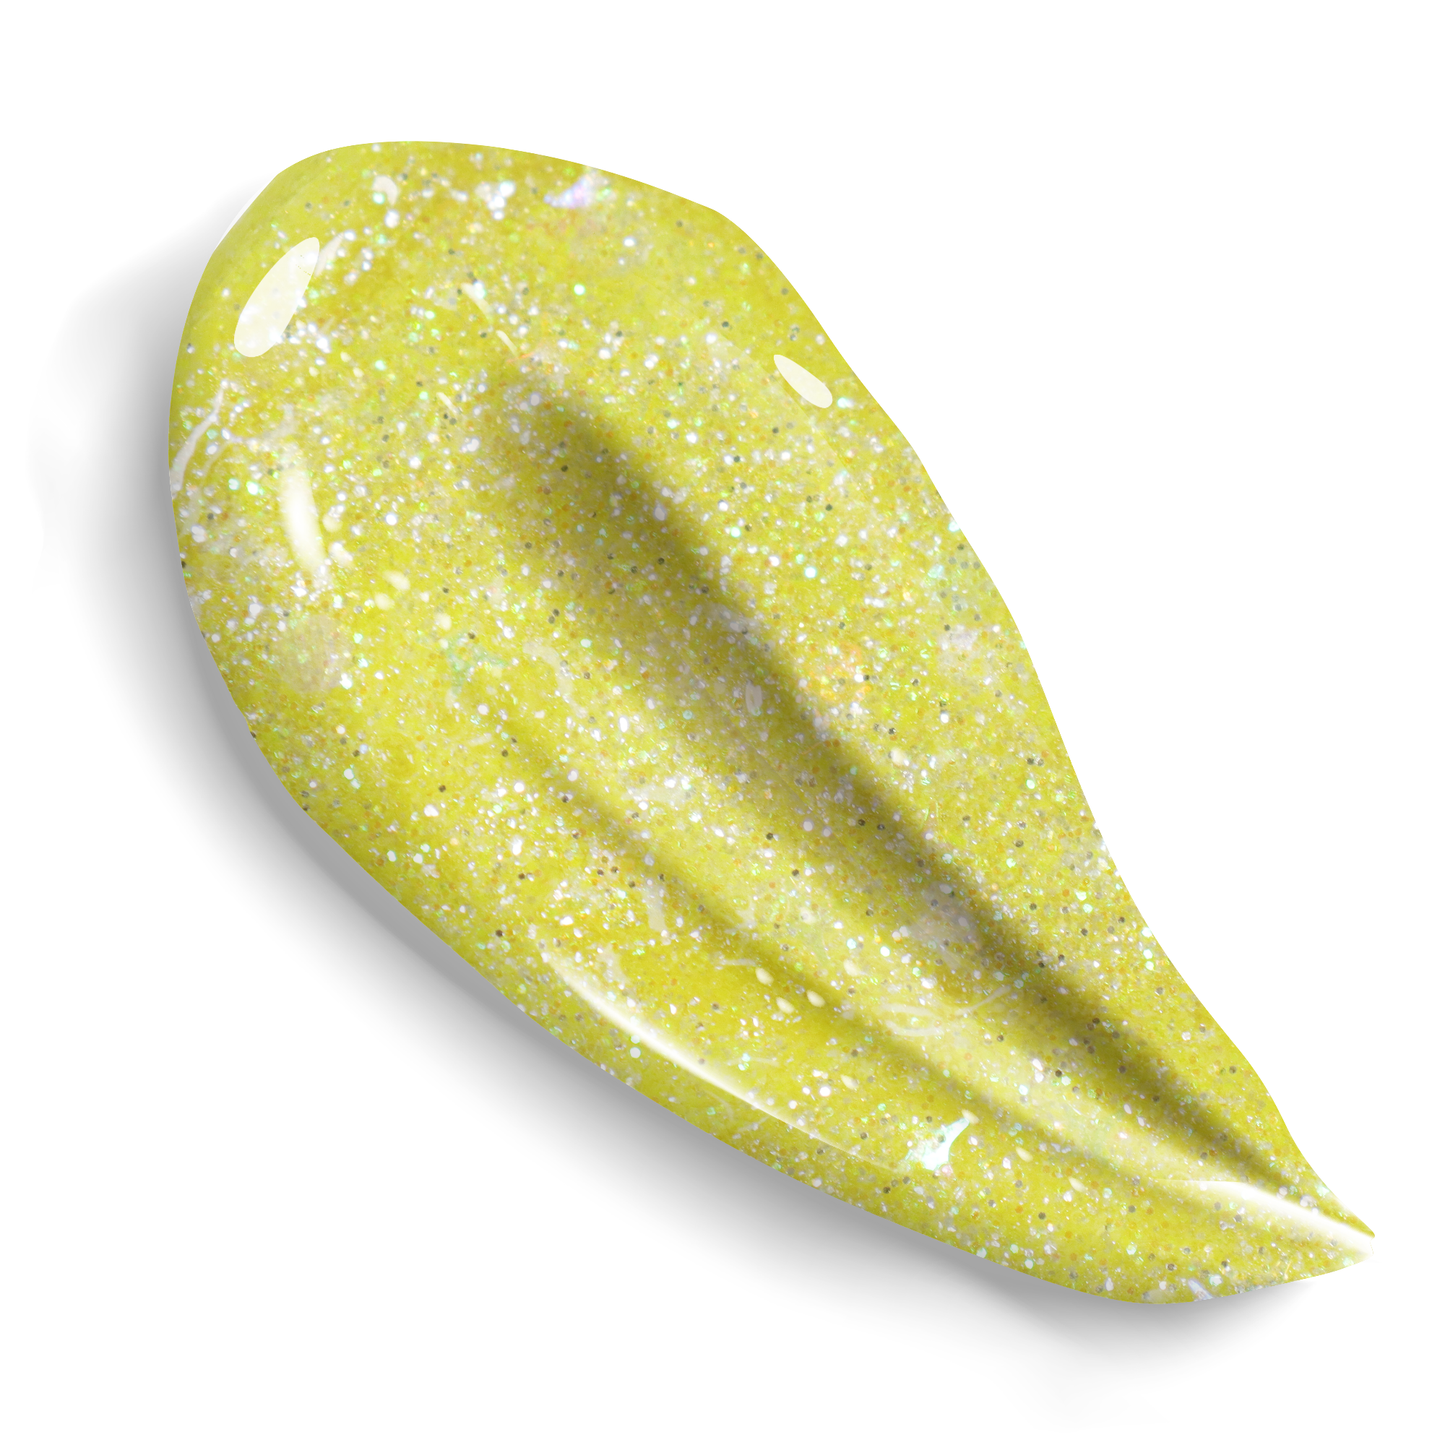 [GOOLITTER] Lemon Lemon 2oz (60mL) Holographic Fine Glitter Gel